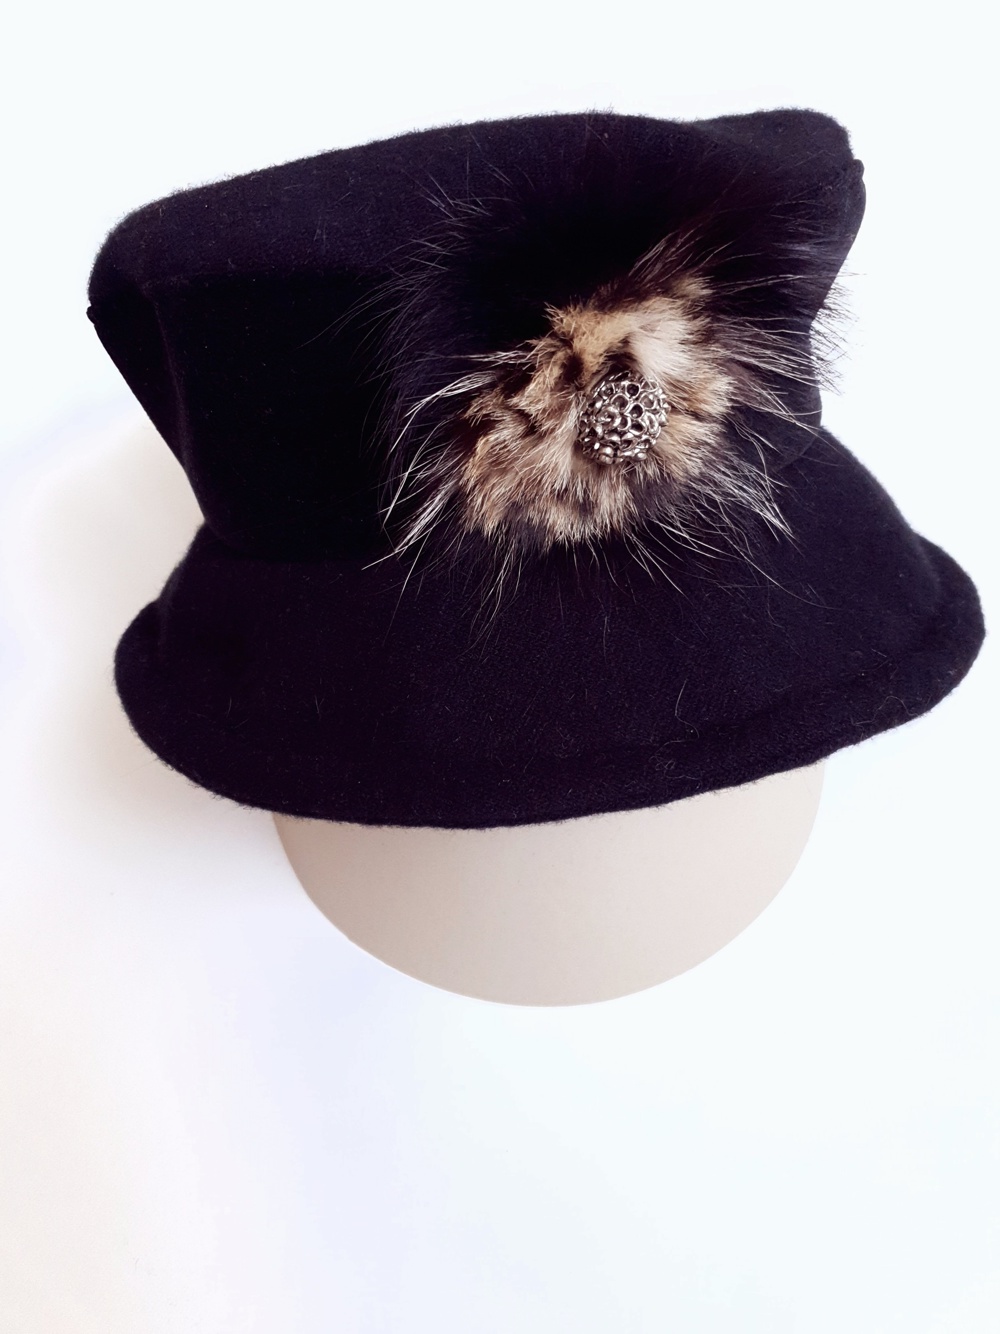 Damen Hut Gr. 55 schwarz von "elle" mit Federn und Brosche